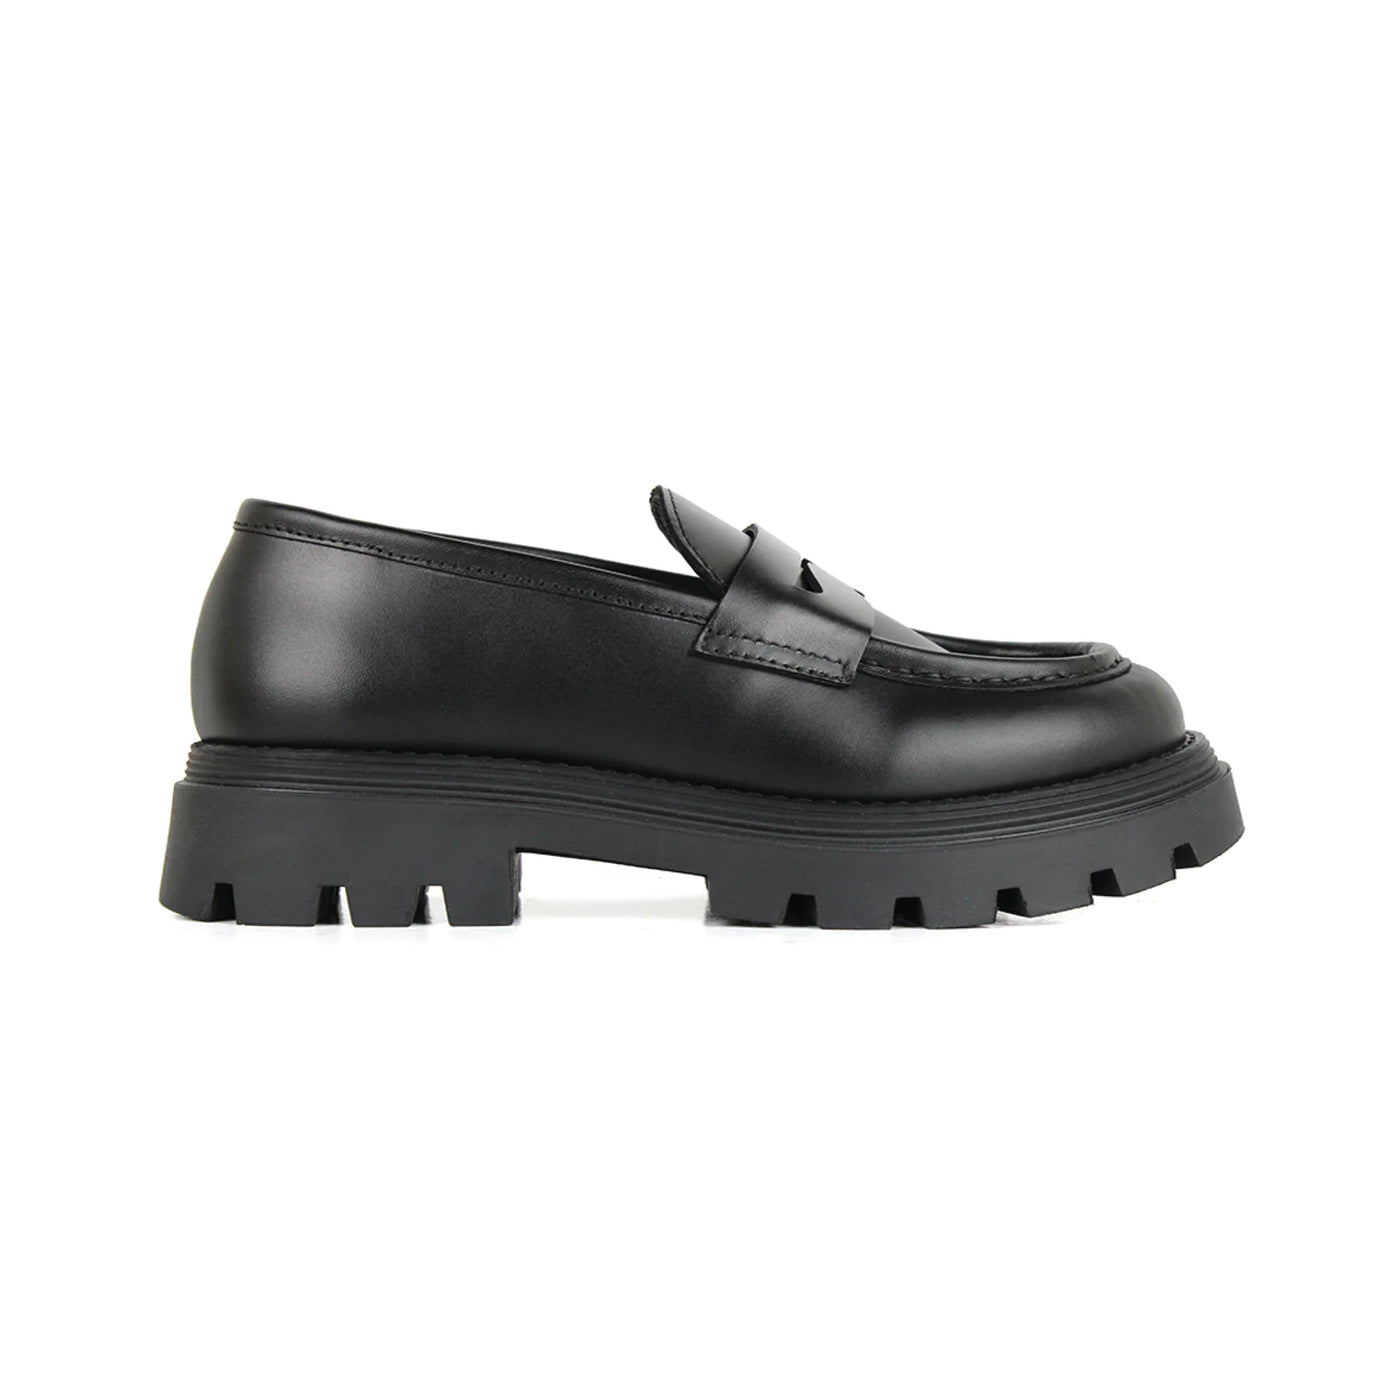 Girls Black Loafer Shoes